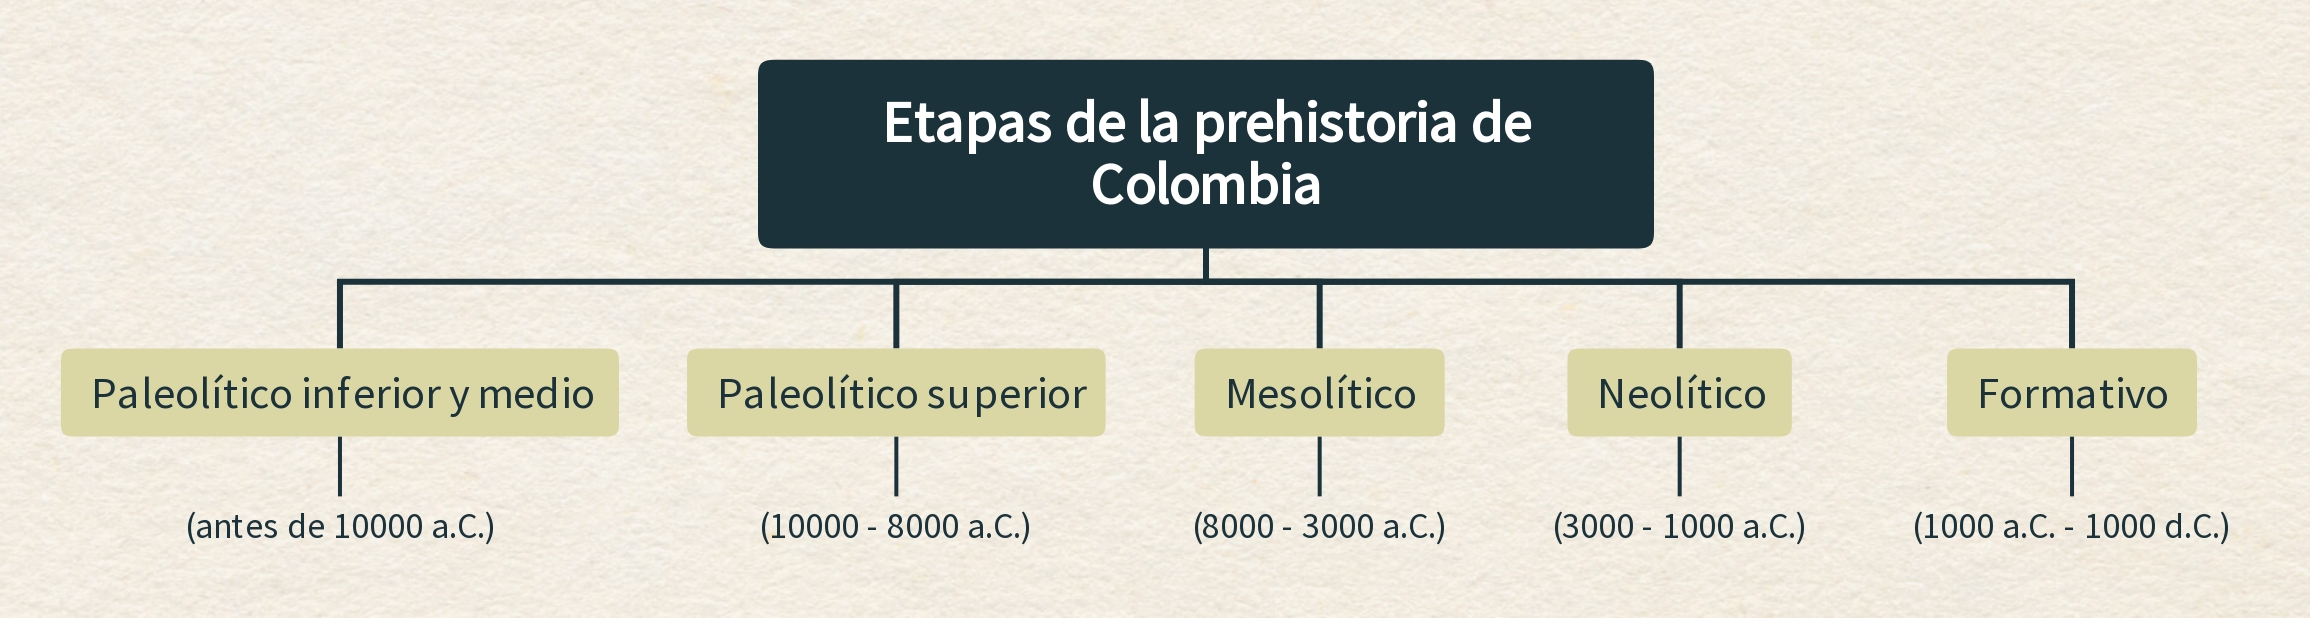 Etapas de la prehistoria de Colombia